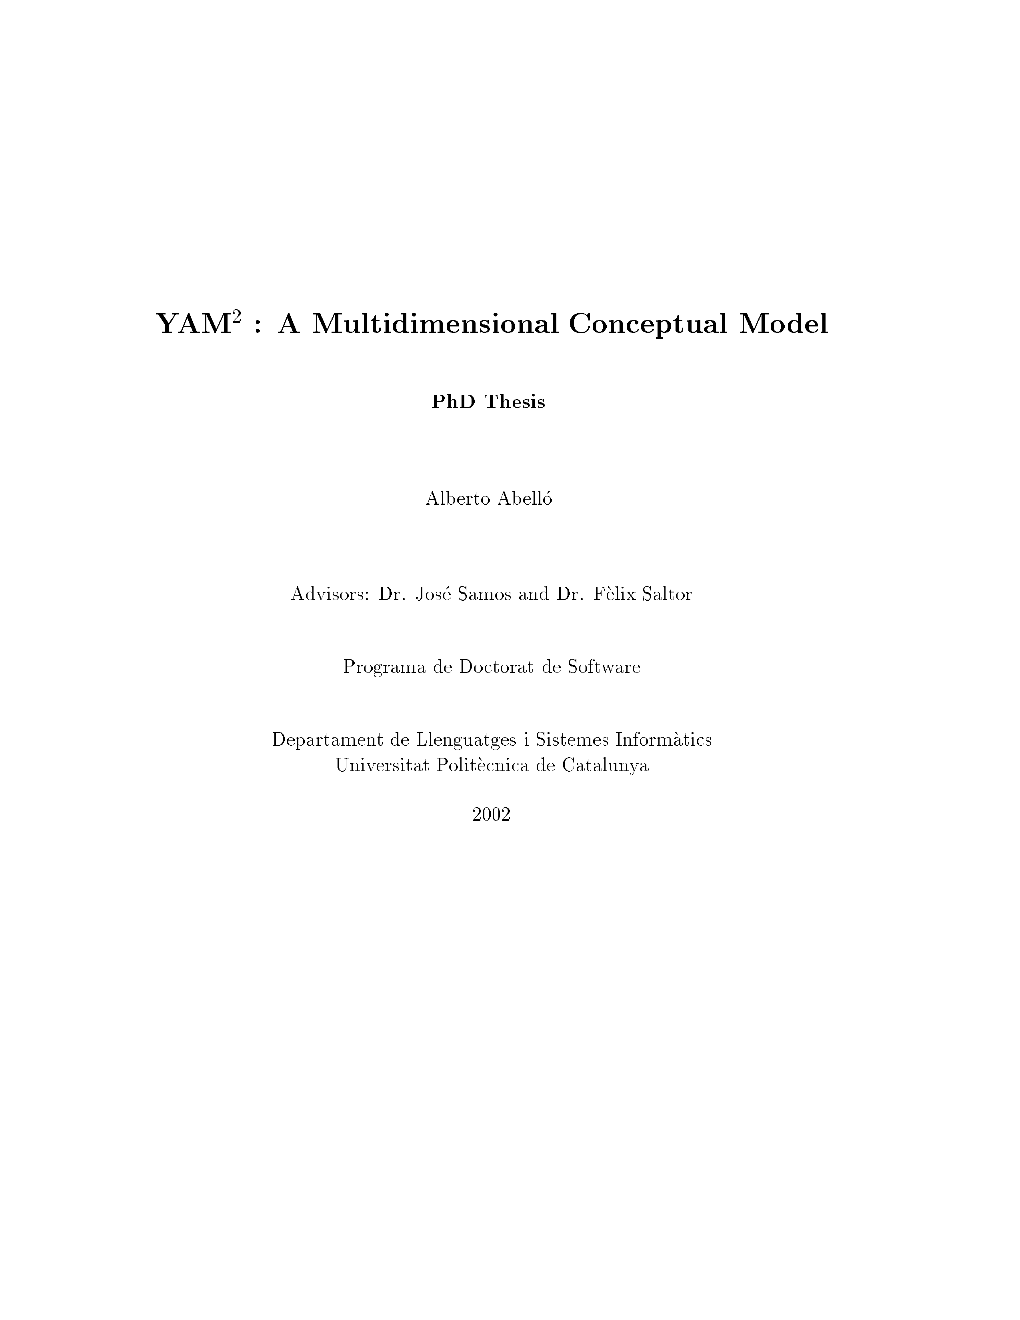 A Multidimensional Conceptual Model